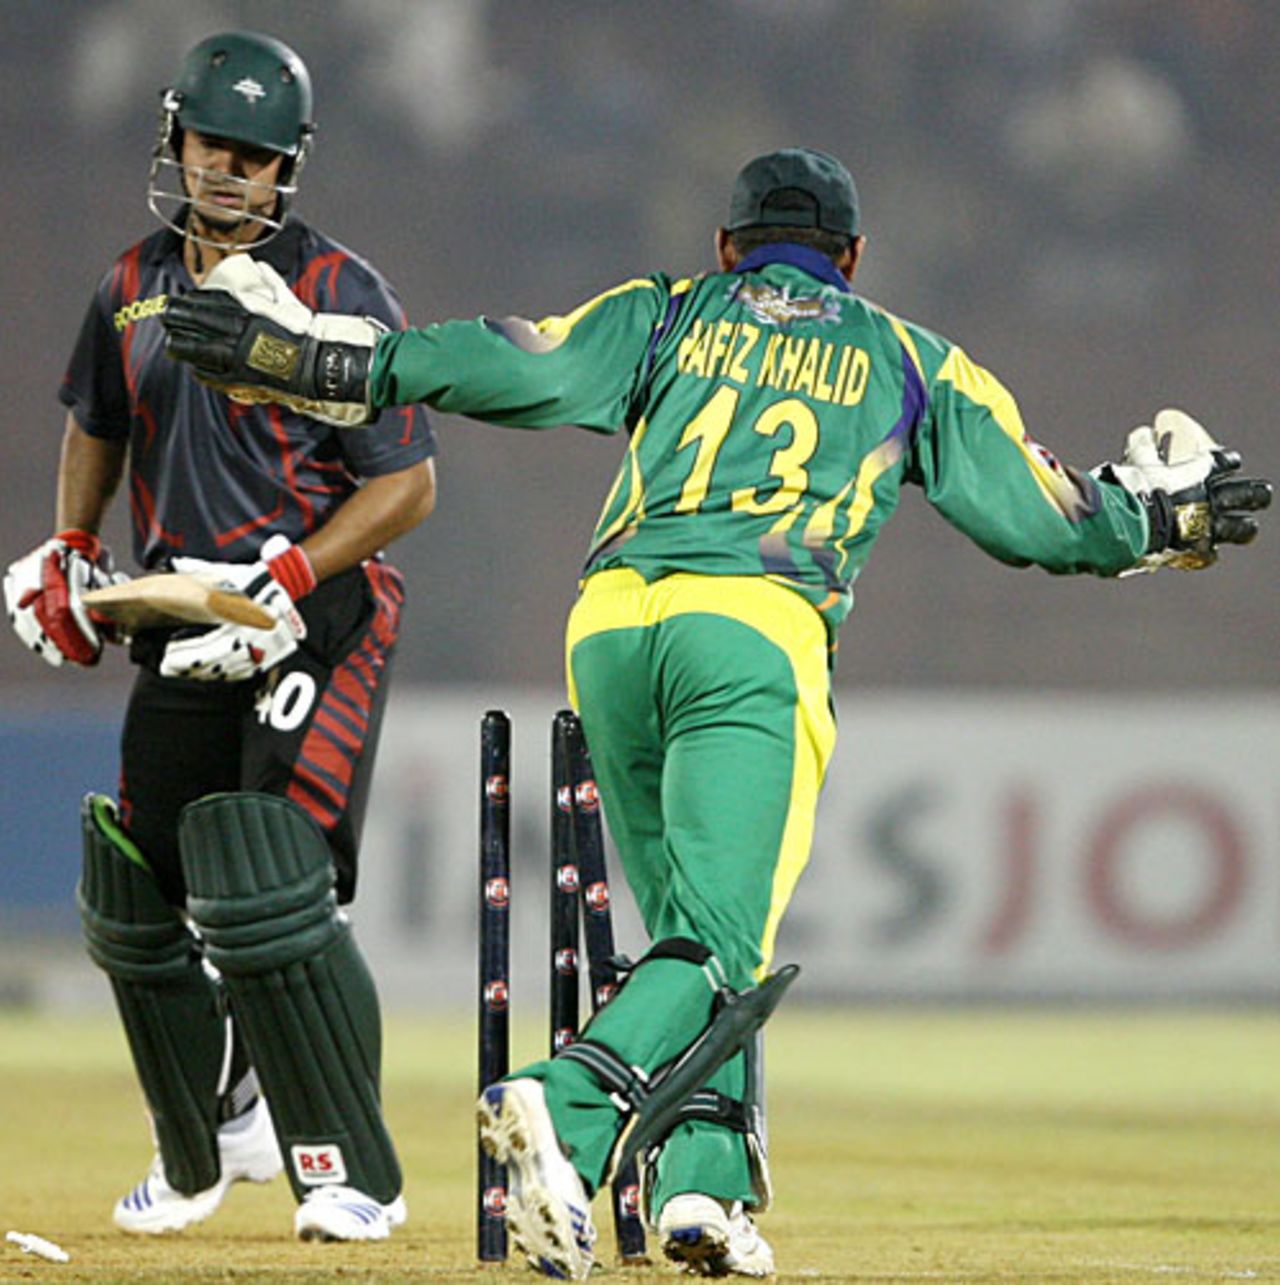 Nazimuddin reacts after being bowled, Dhaka Warriors v Lahore Badshahs, ICL, Ahmedabad, November 7, 2008